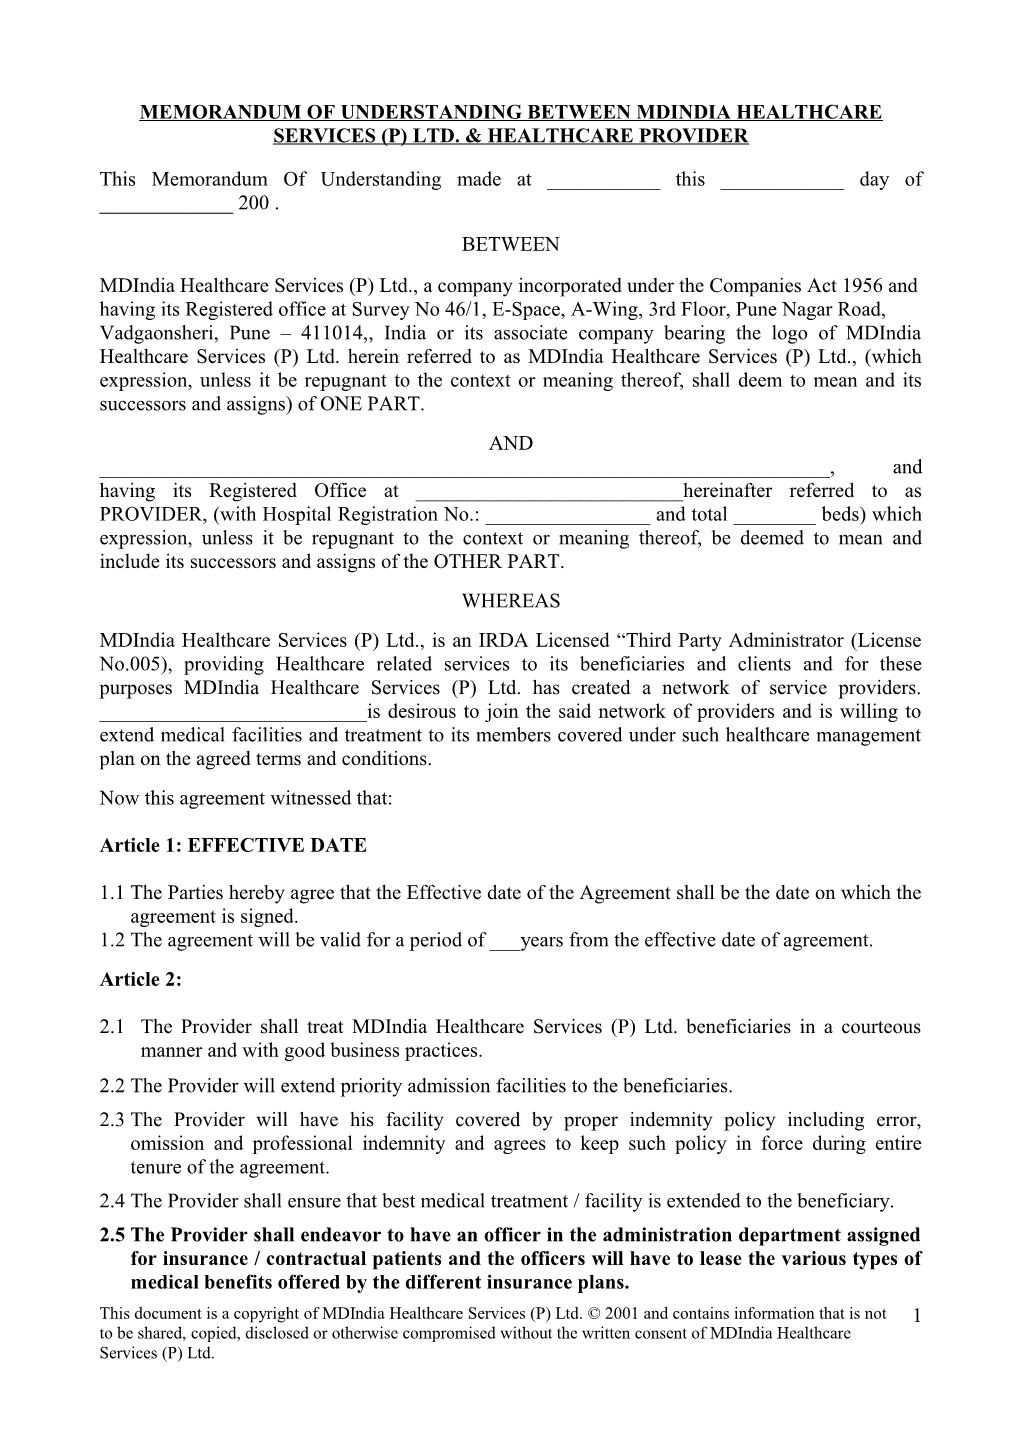 Memorandum of Understanding Between Mdindia Healthcare Services Pvt